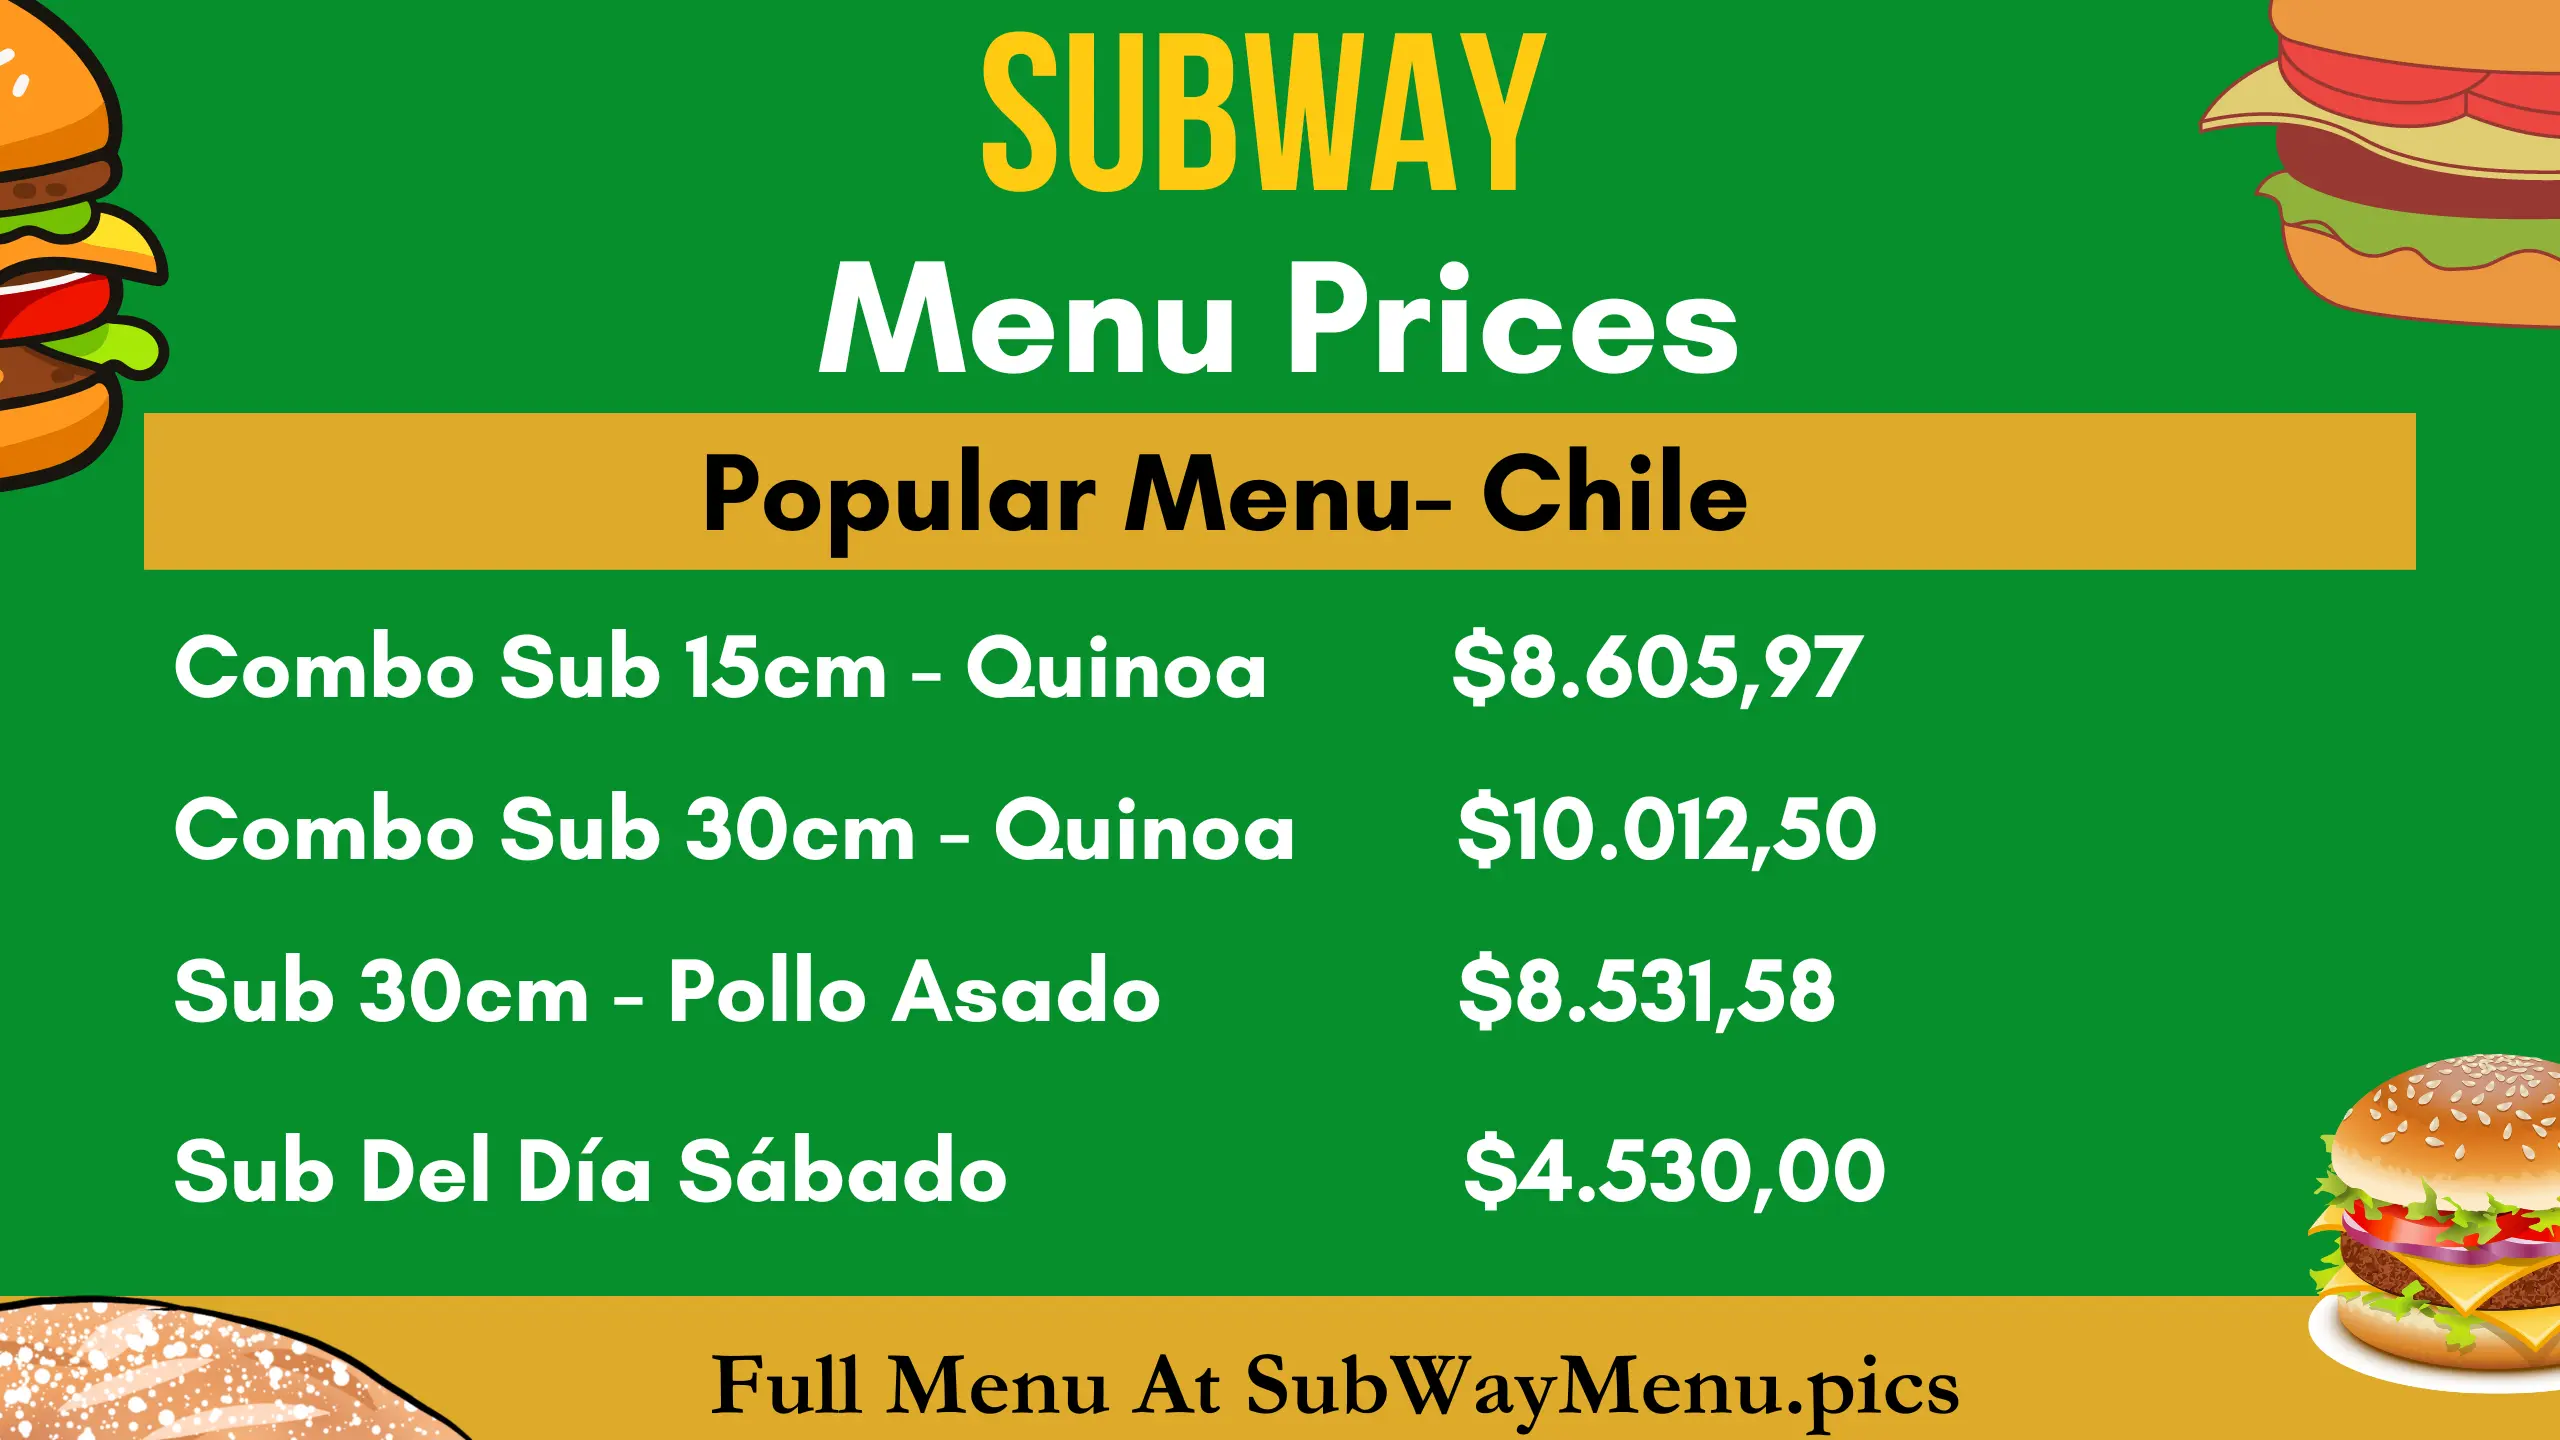 Subway Precios del Menú (Chile)